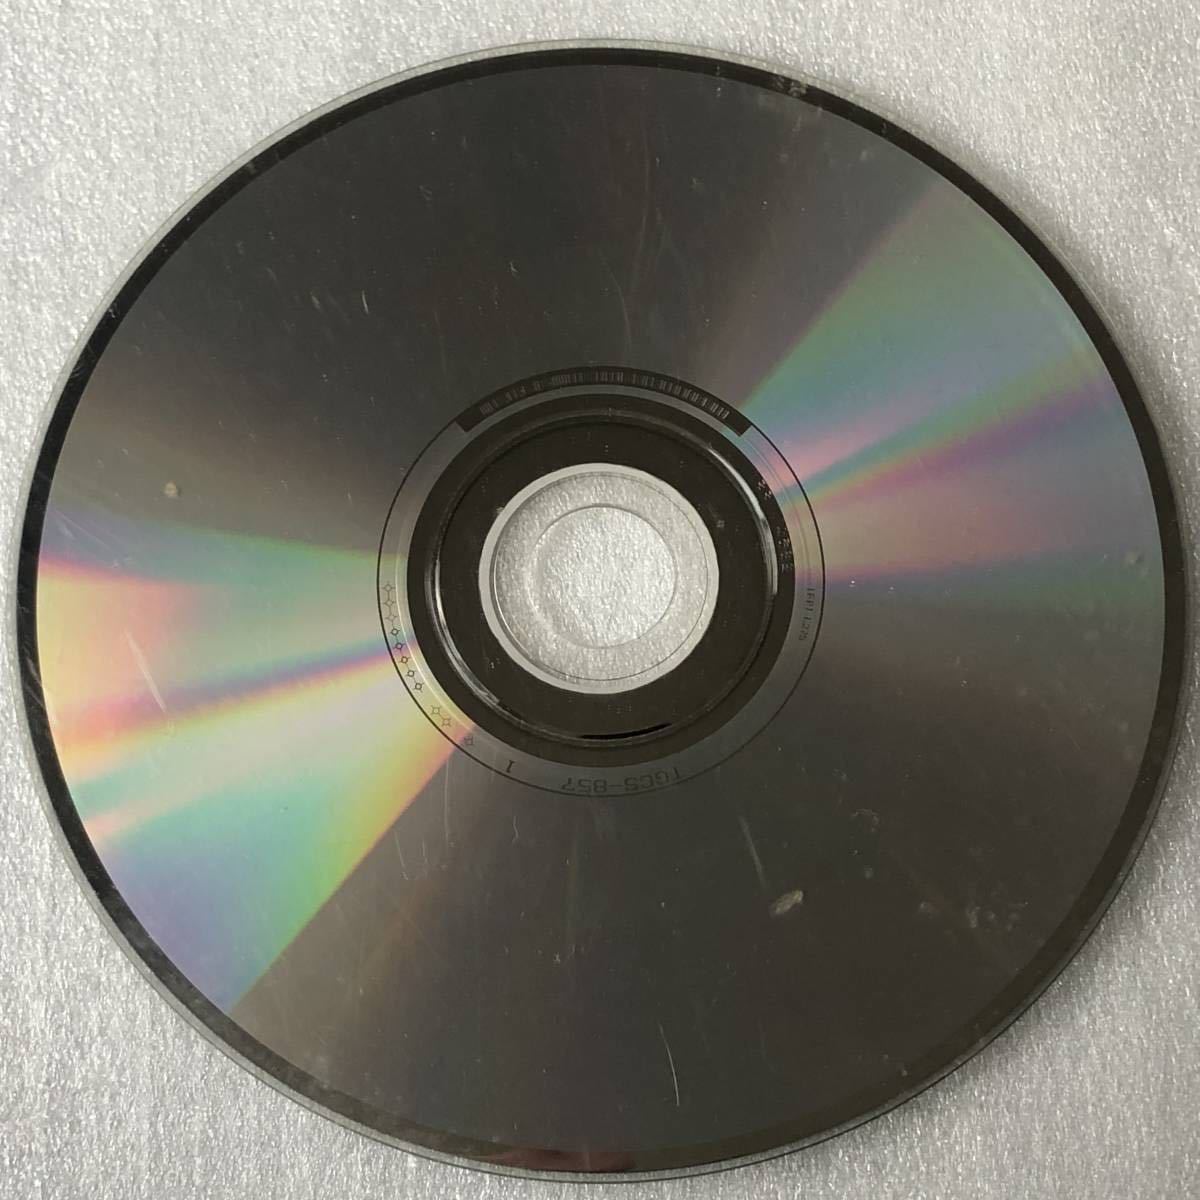 特価CD 管理番号0641 Crystal Kay_このような傷だらけの品は除外しています。